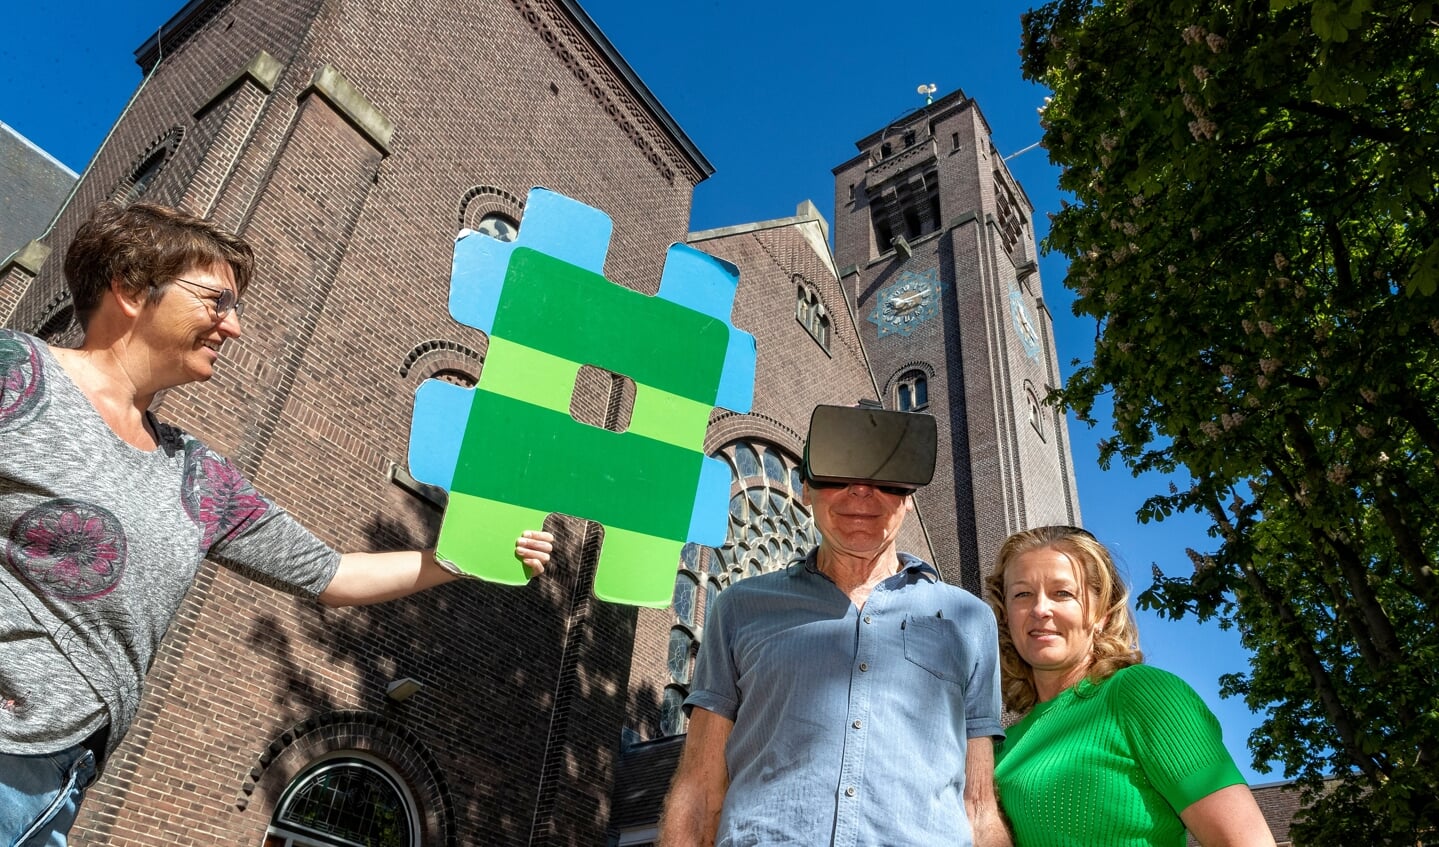 De Esport Game Arena in de Raadhuisstraat heeft VR-brillen beschikbaar gesteld.